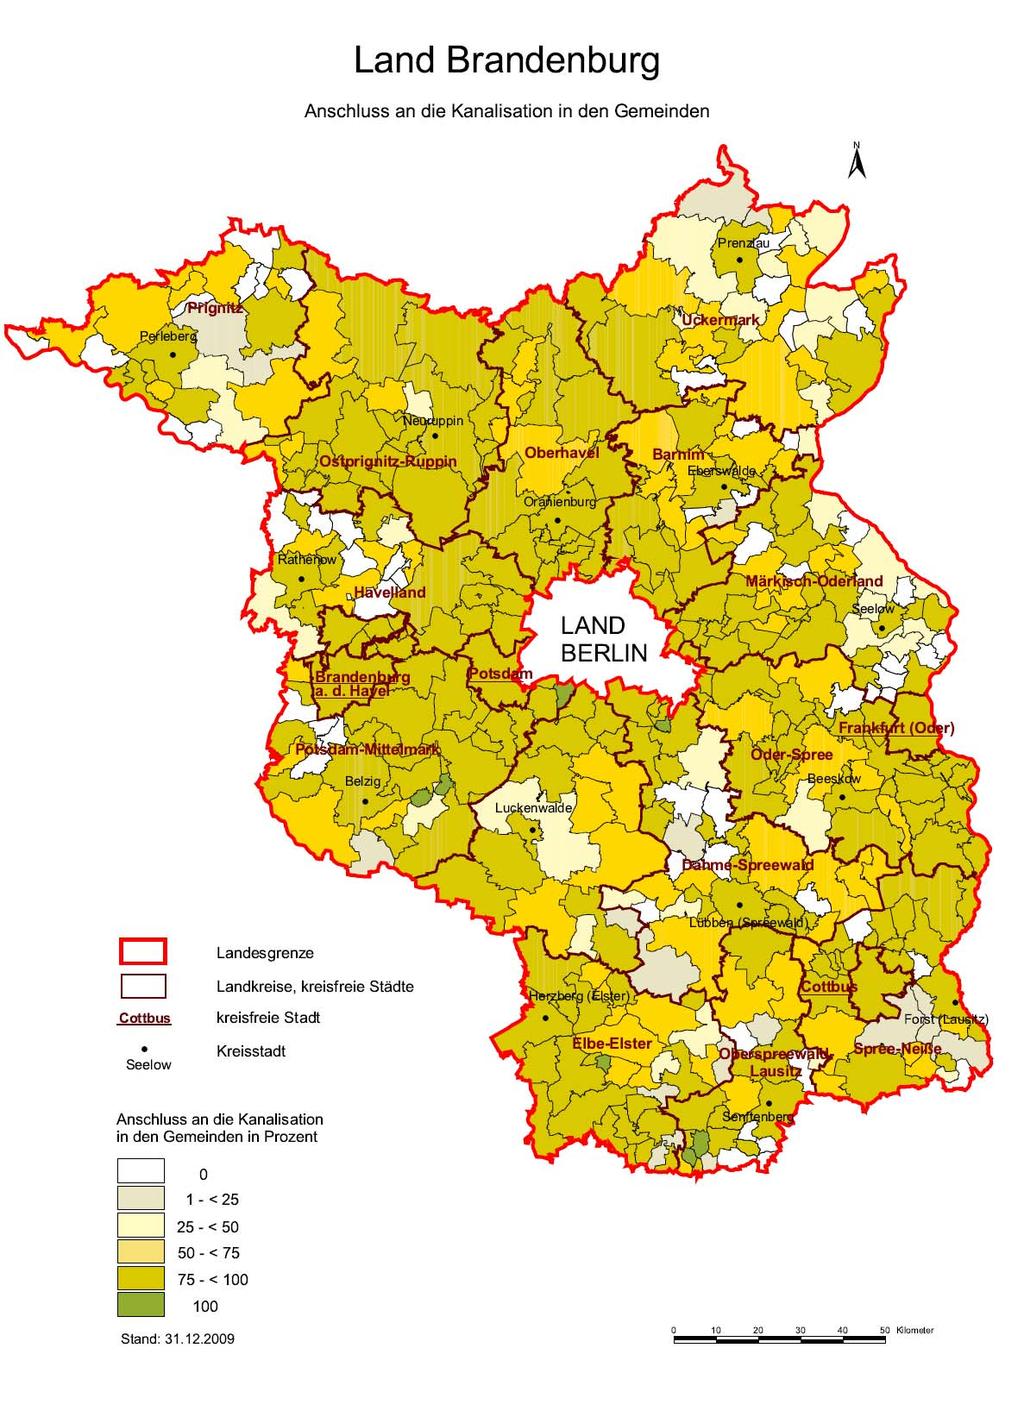 Abb. 9: Landesübersicht über den Anschluss an die zentrale Abwasserentsorgung durch Kanalisation in den Gemeinden Brandenburgs